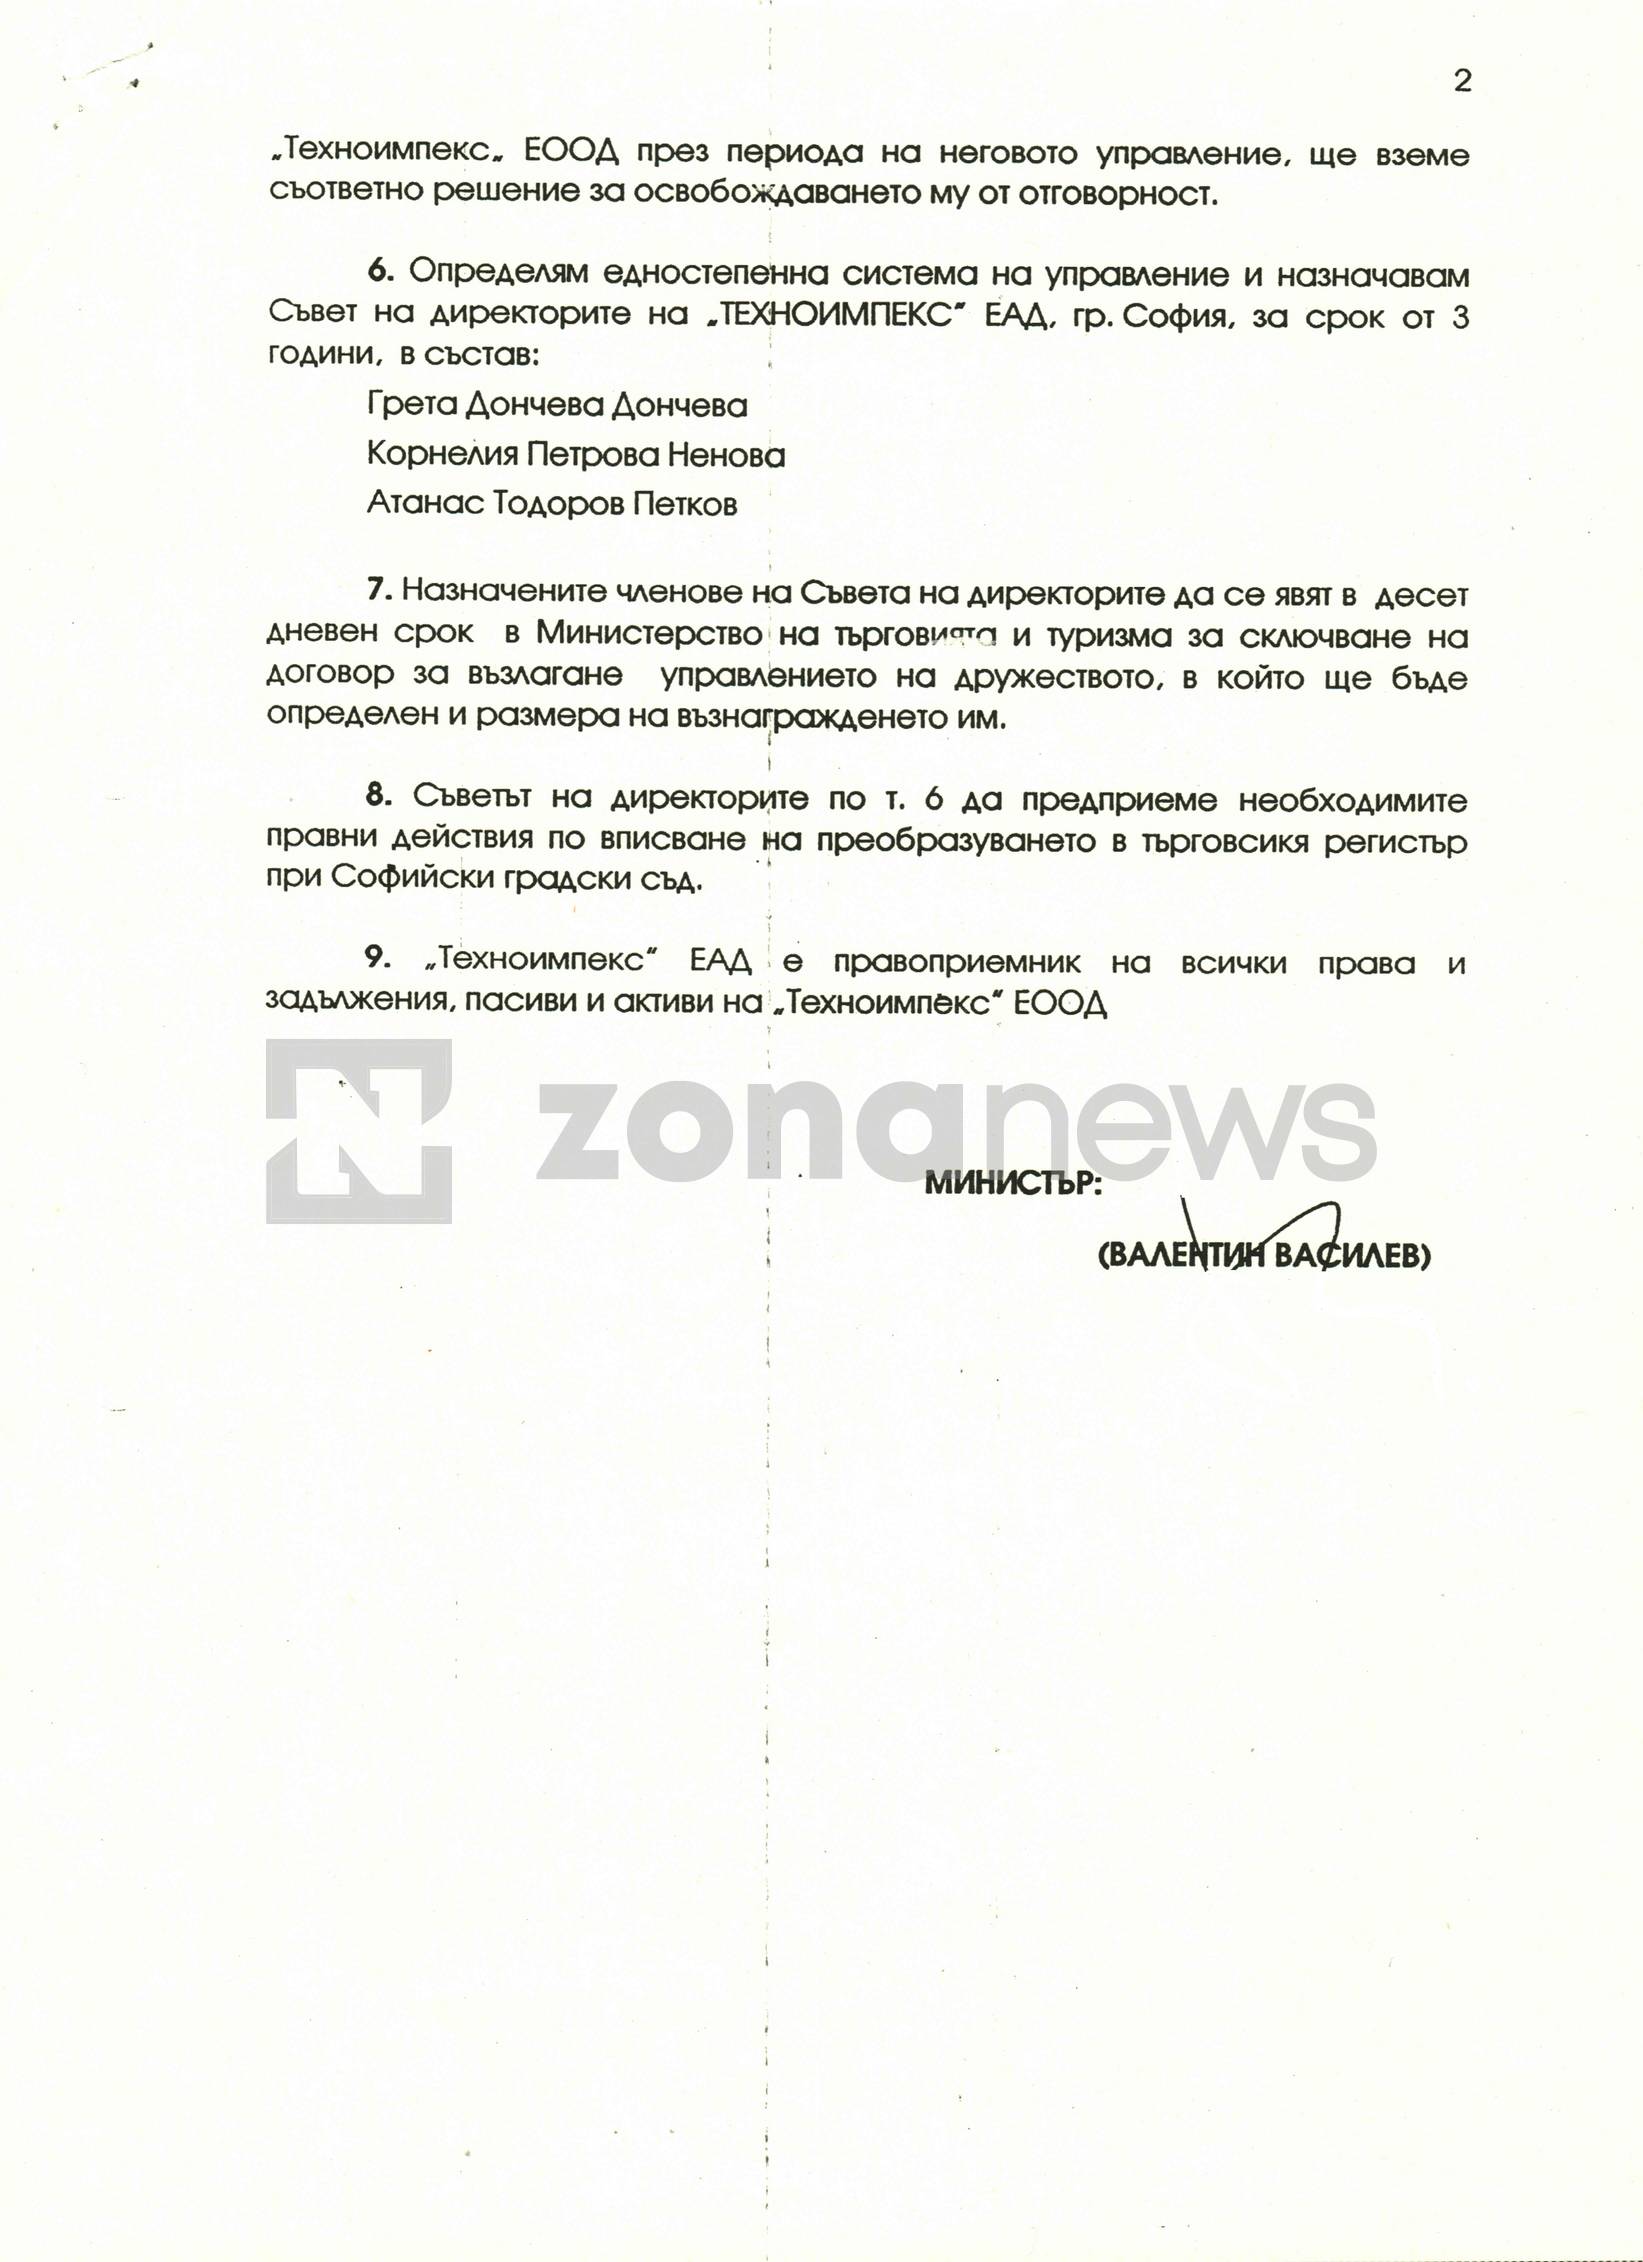 Заповедта на Валентин Василев от 1997 г., за назначаването на Нинова в Съвета н адиректорите на Техноимпекс 